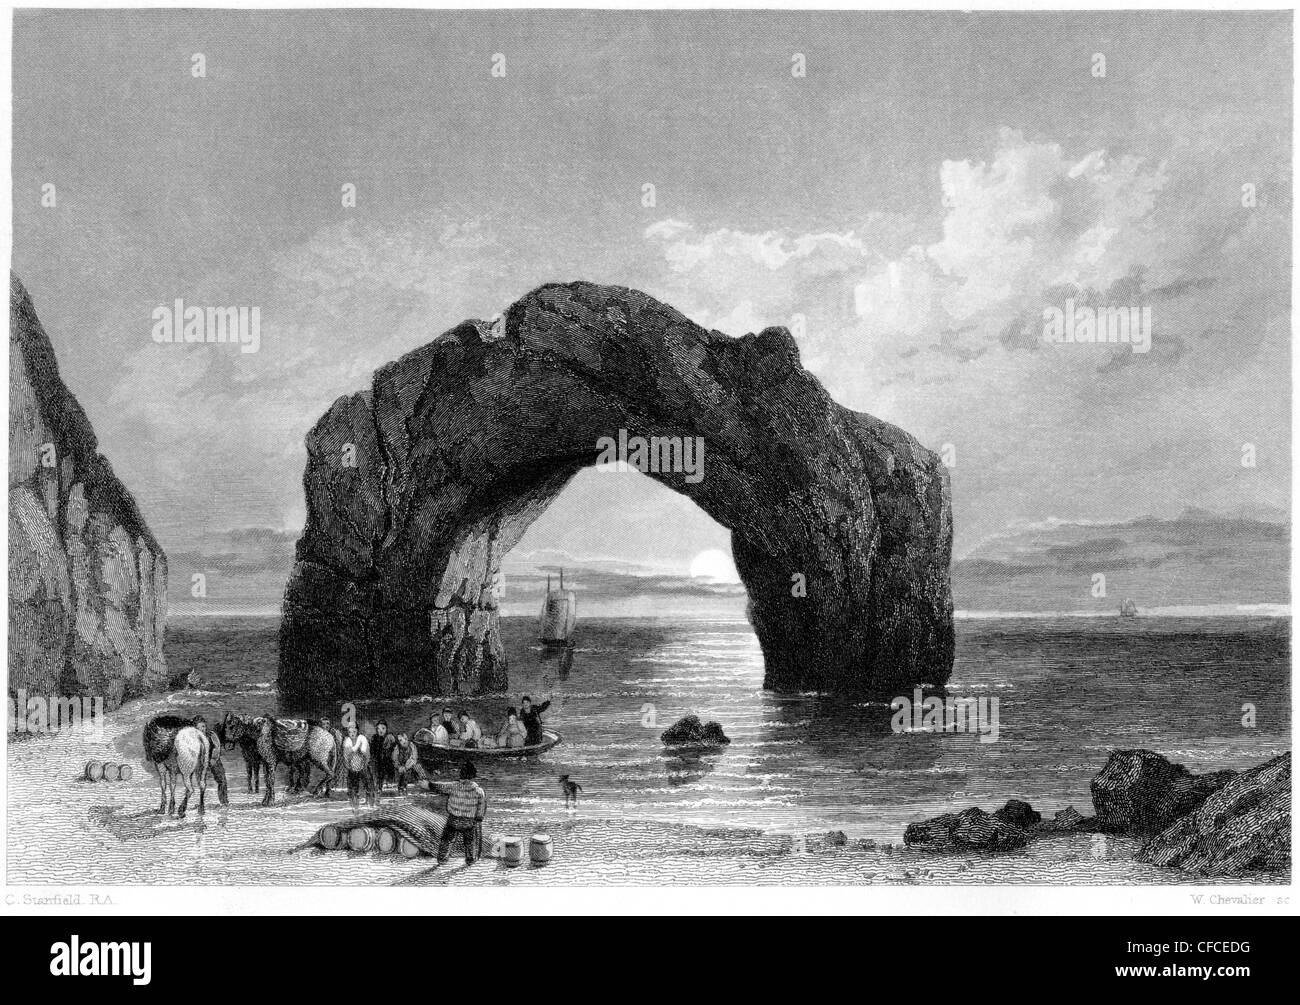 Gravur "gewölbt Rock Isle Of Wight" Scannen mit hoher Auflösung aus einem Buch mit dem Titel veröffentlicht im Jahre 1847. Es war im Süßwasser. Stockfoto